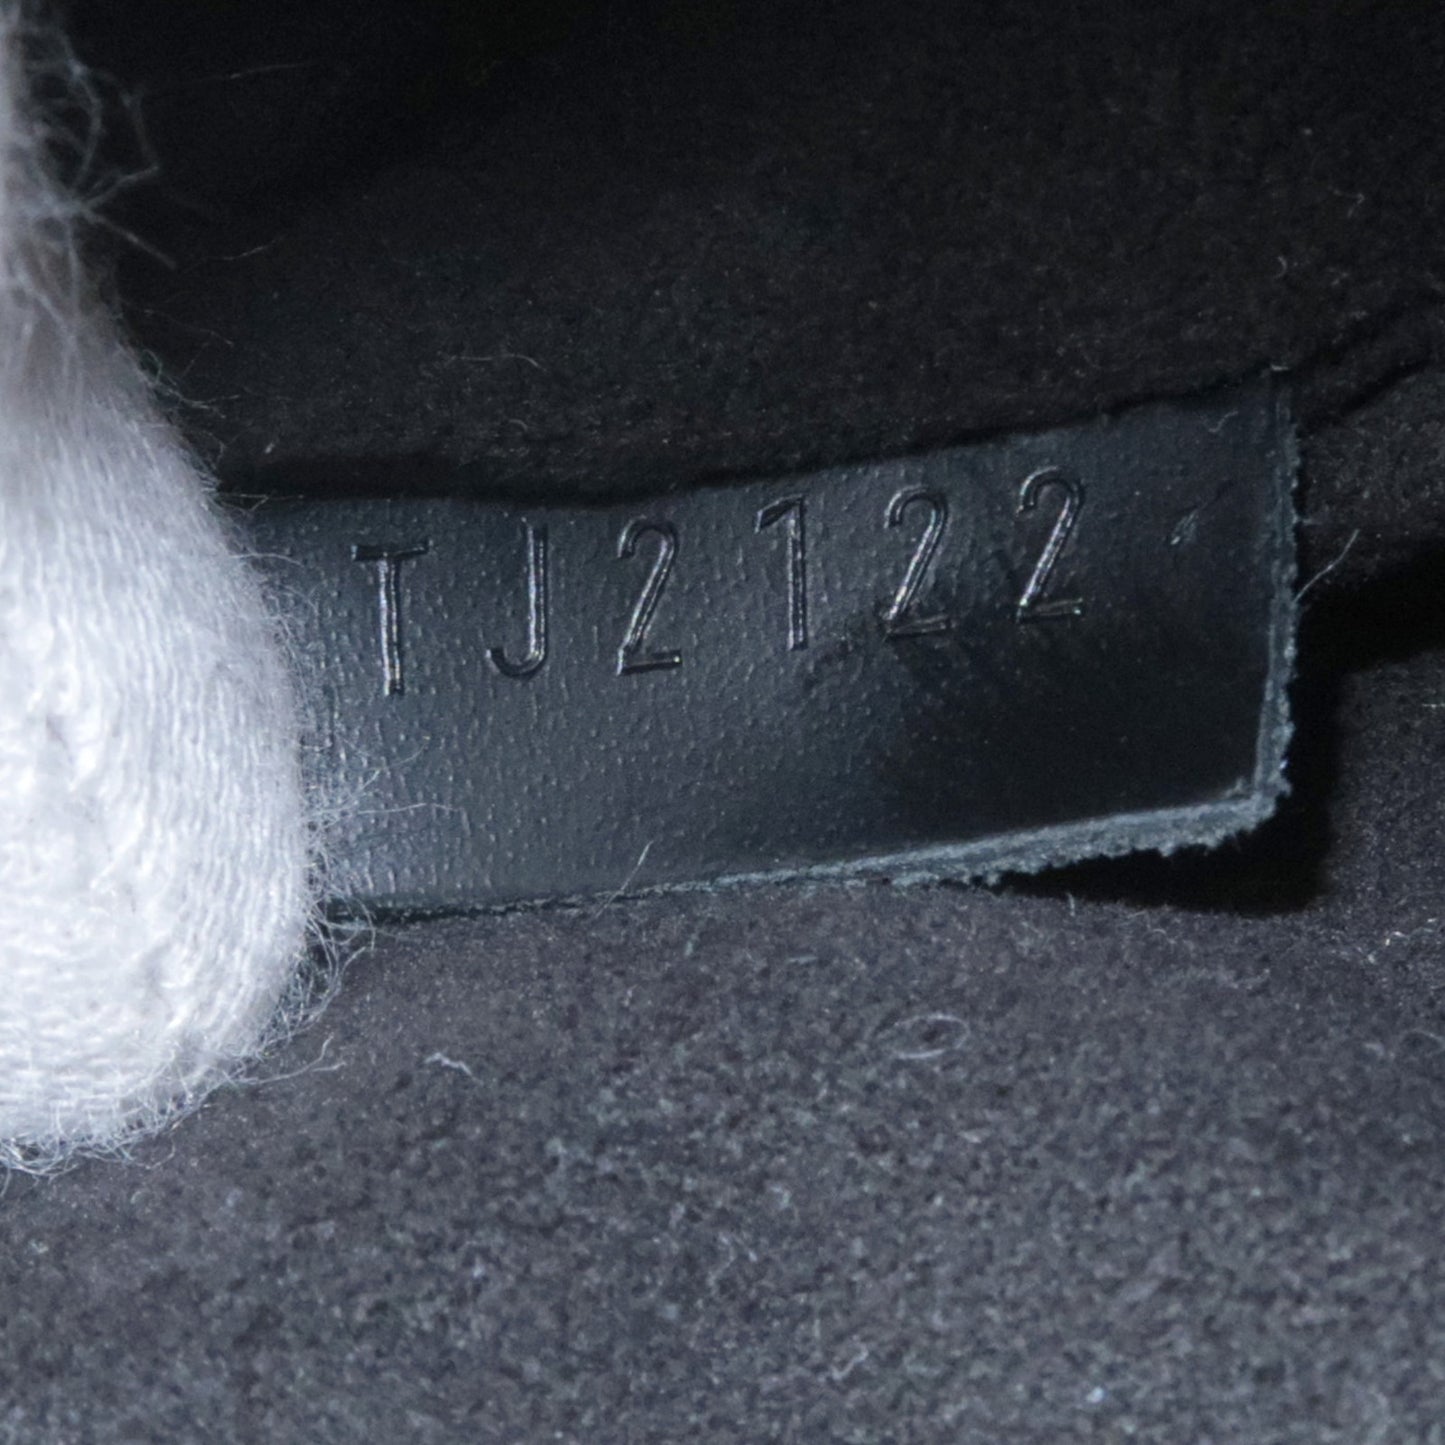 Authentic-Louis-Vuitton-Epi-Petit-Noe-Shoulder-Bag-Black-M40752-Used-F/S